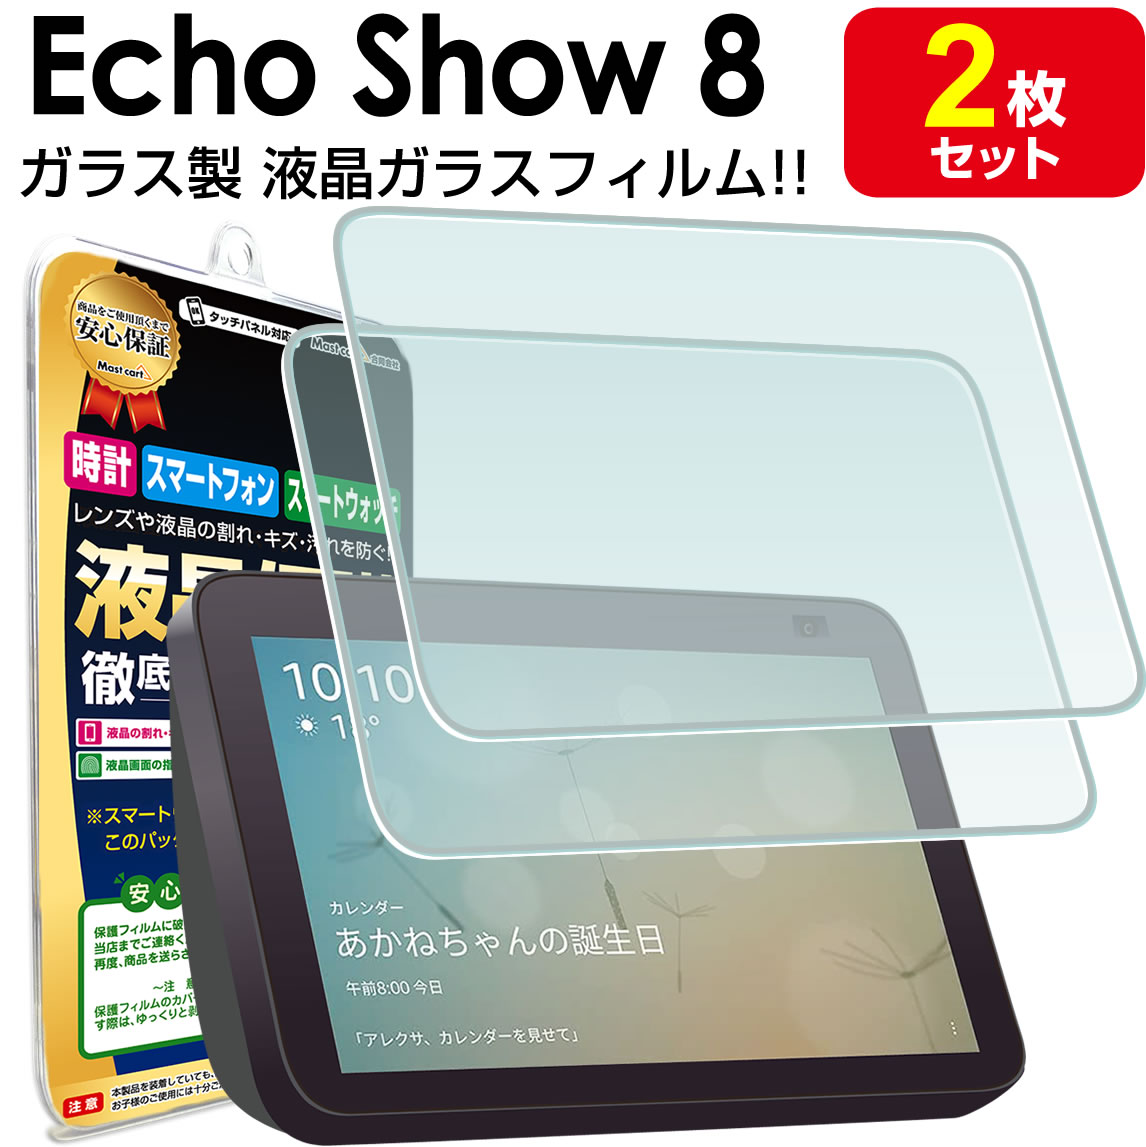 【2枚セット】 Echo Show 8 第2世代 ガラスフィルム 保護フィルム エコーショー8 echoshow echoshow8 8インチ エコーショー ガラス 液晶 保護 フィルム シート 画面 傷 キズ カバー